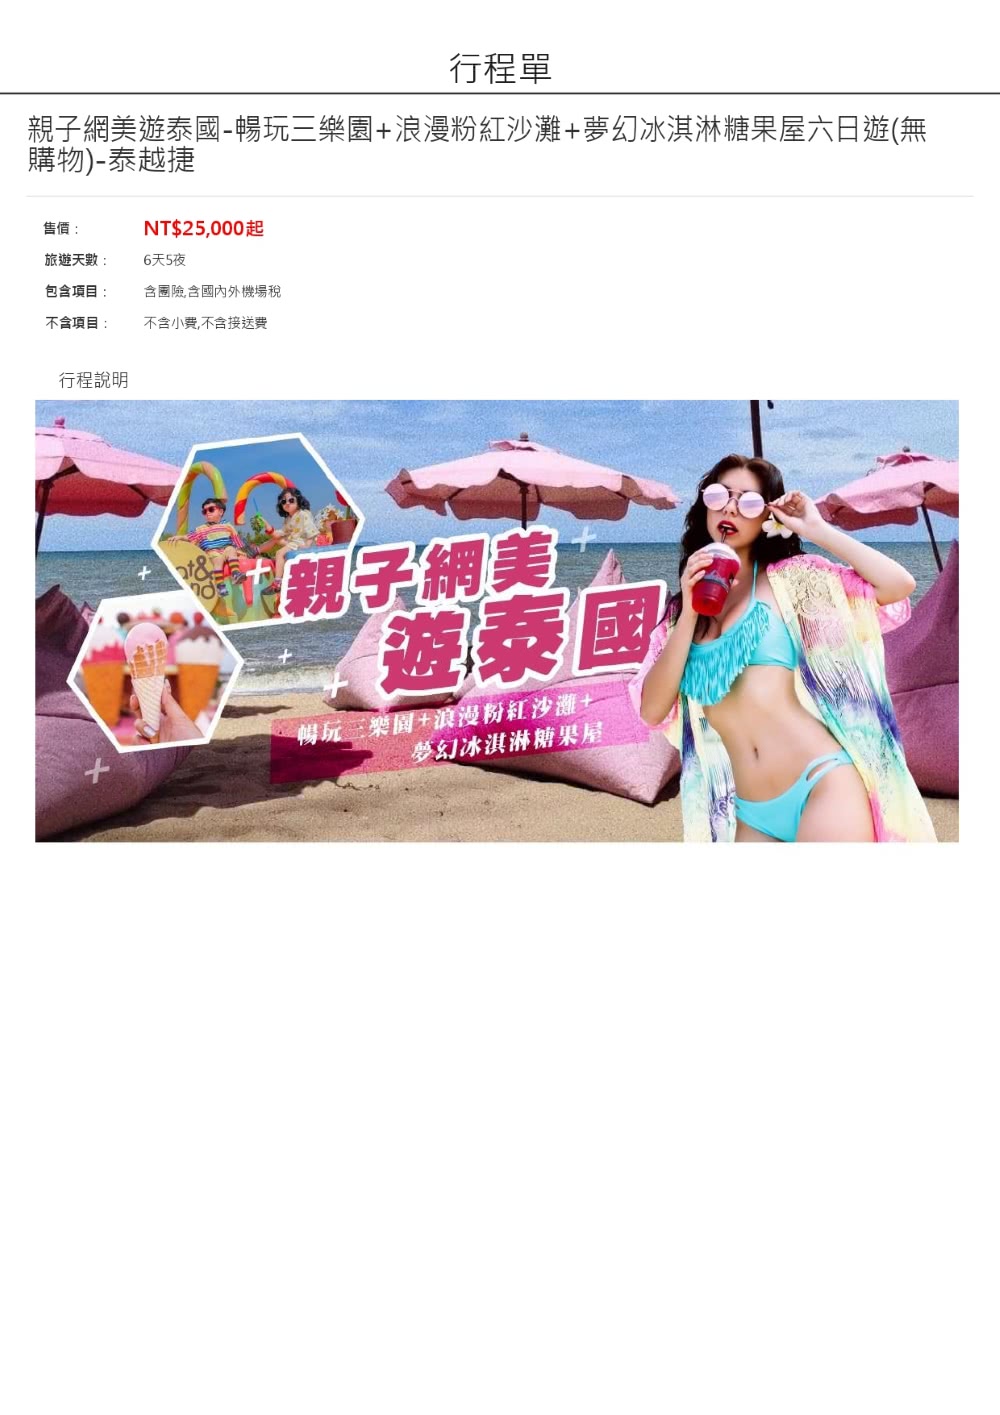 新魅力旅遊親子網美遊泰國六日遊 暢玩三樂園+浪漫粉紅沙灘+夢